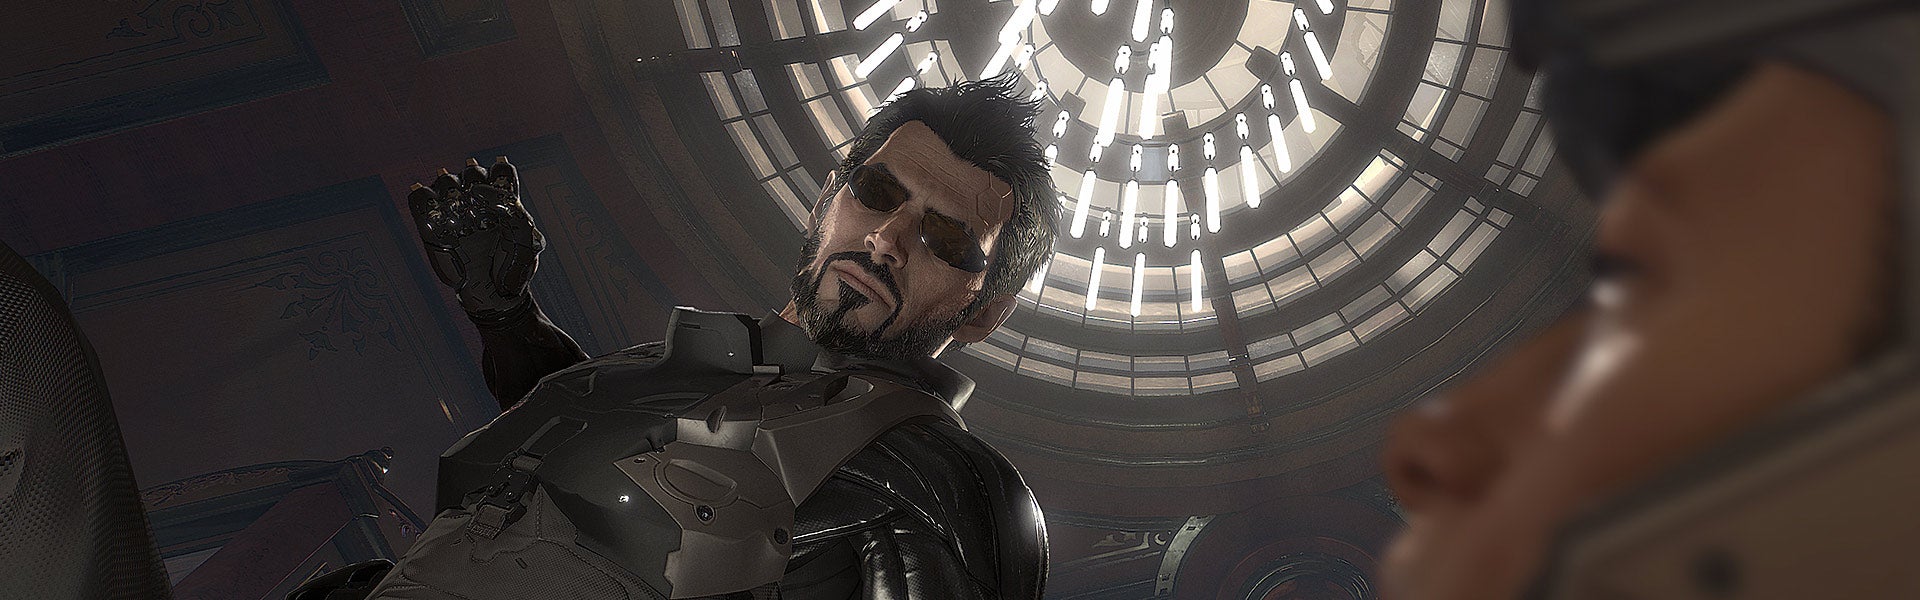 Image for Deus Ex: Mankind Divided - Adam Jensen 2.0: the next step in human evolution